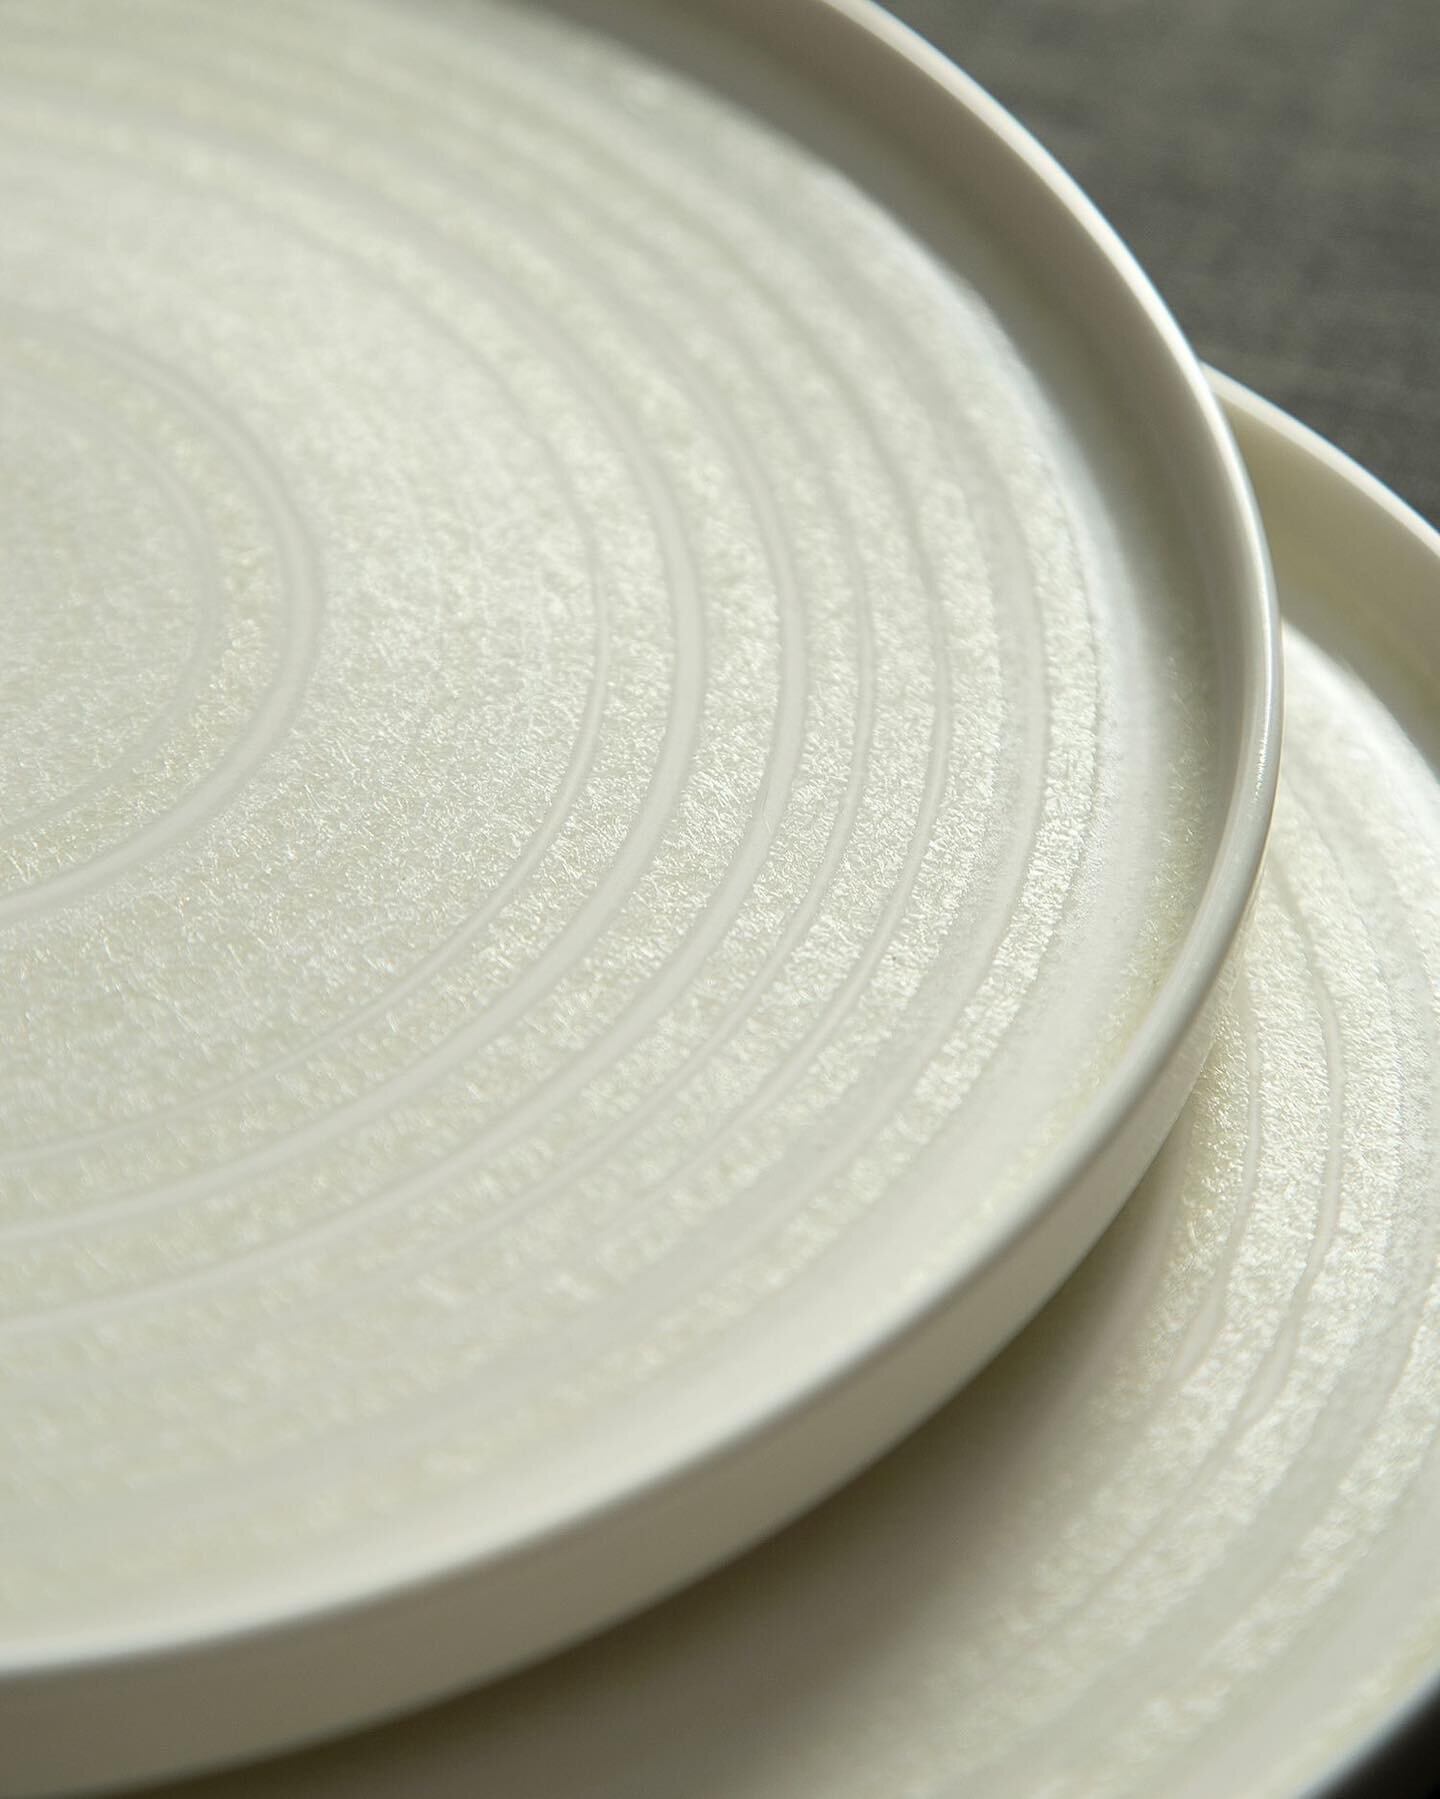 Ceramic cream plates up close. Handmade with an off-white reactive glaze. ✨✨